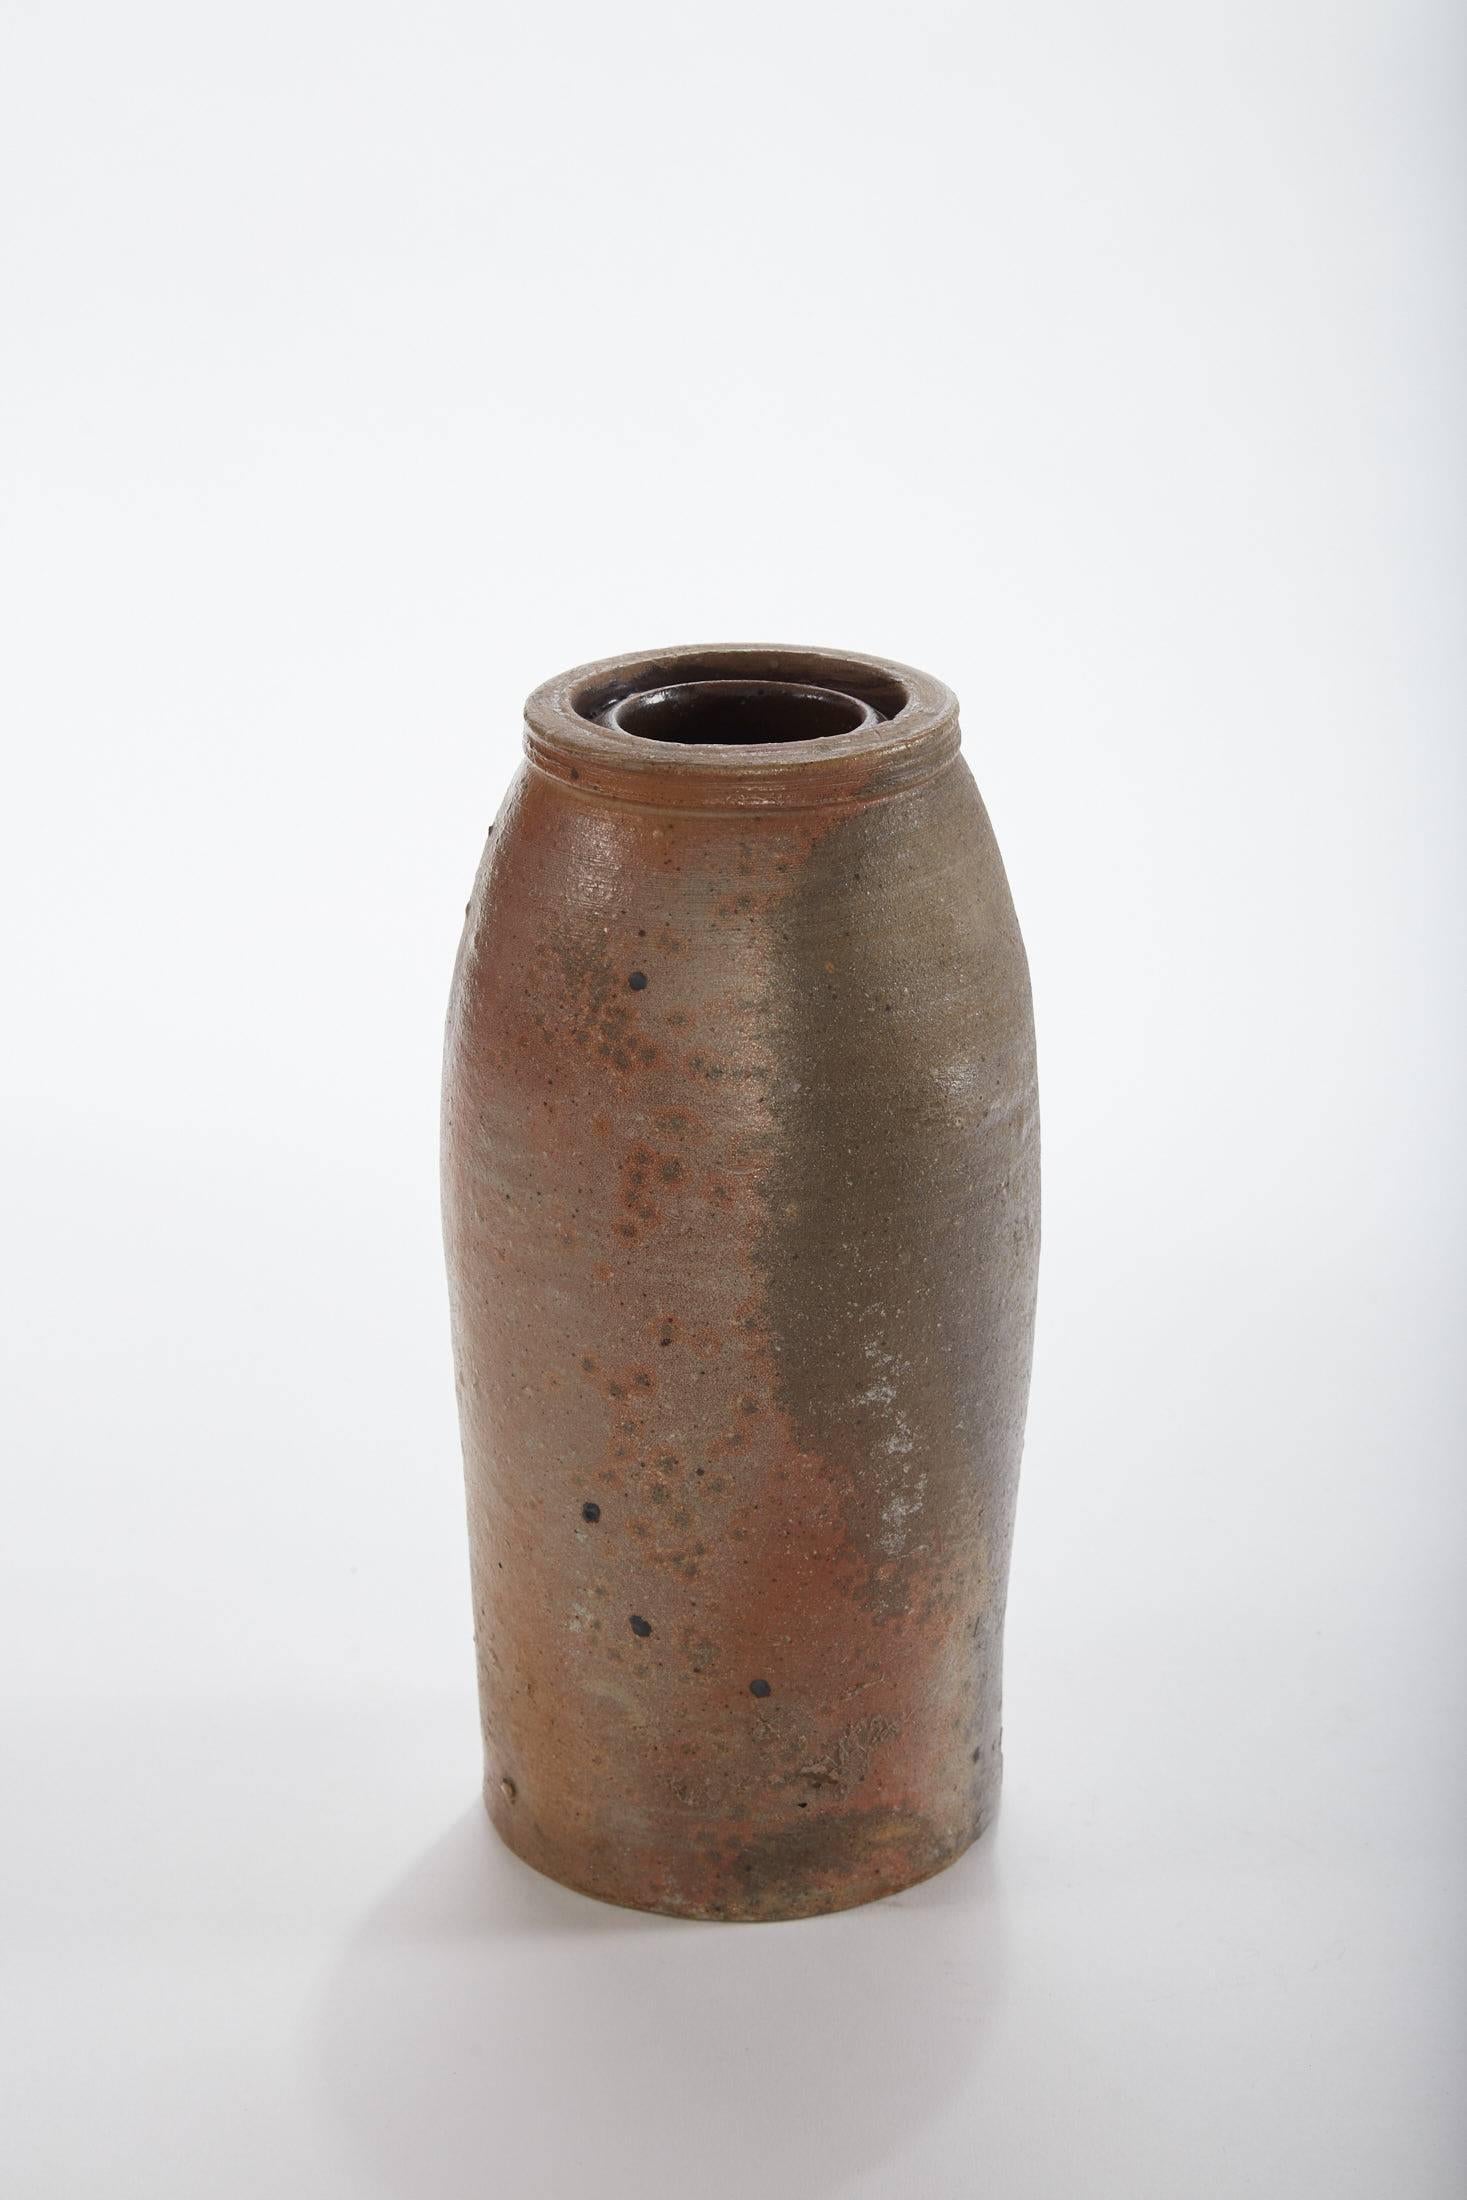 Ceramic Late 19th Century American Salt Glaze Crock